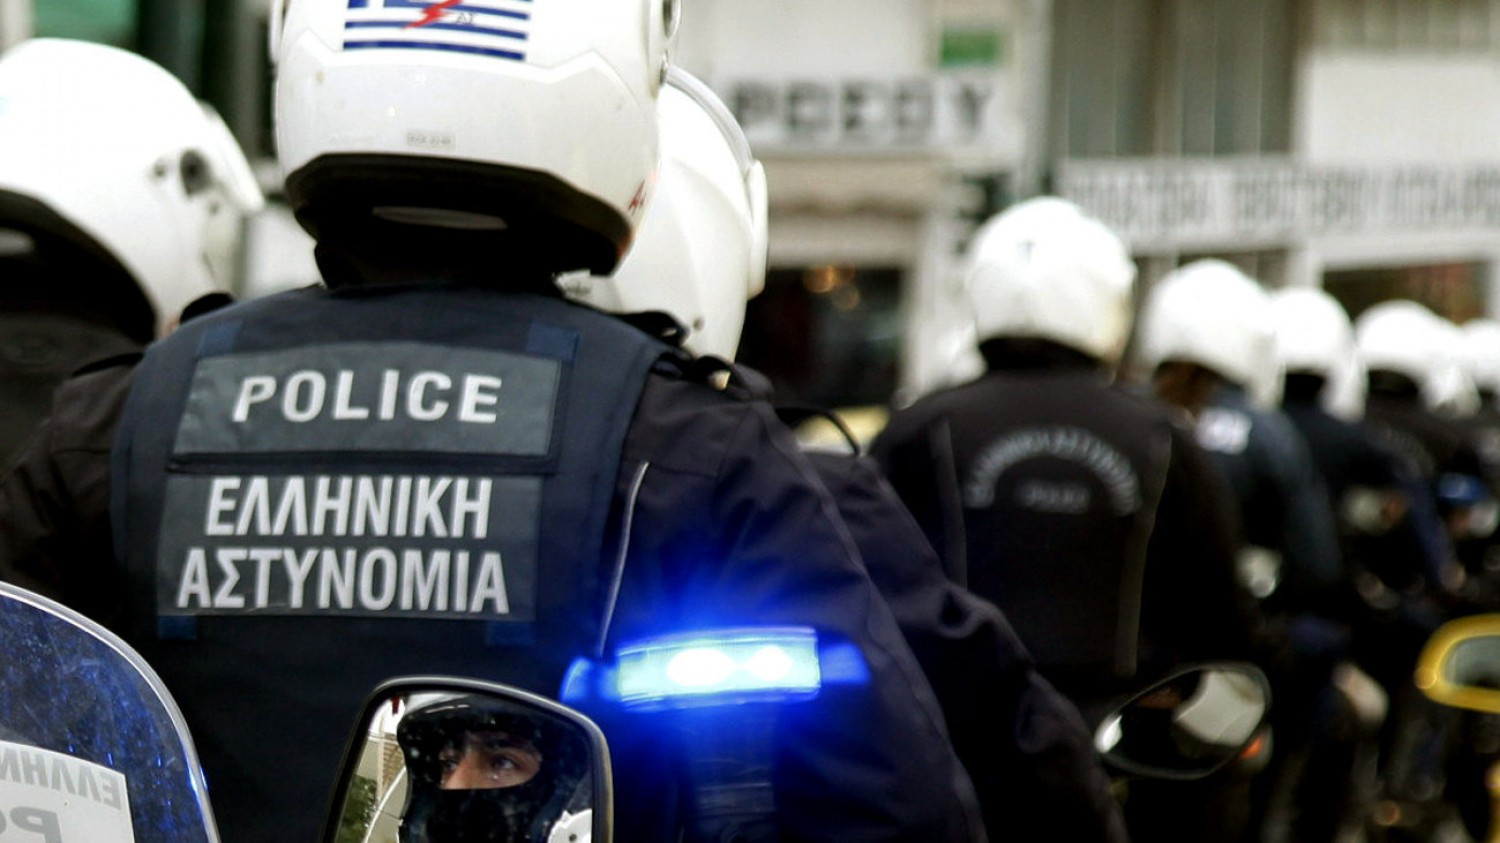 Έβρος: Συνελήφθη Ρώσος έμπορος ναρκωτικών που καταζητούνταν από την Interpol